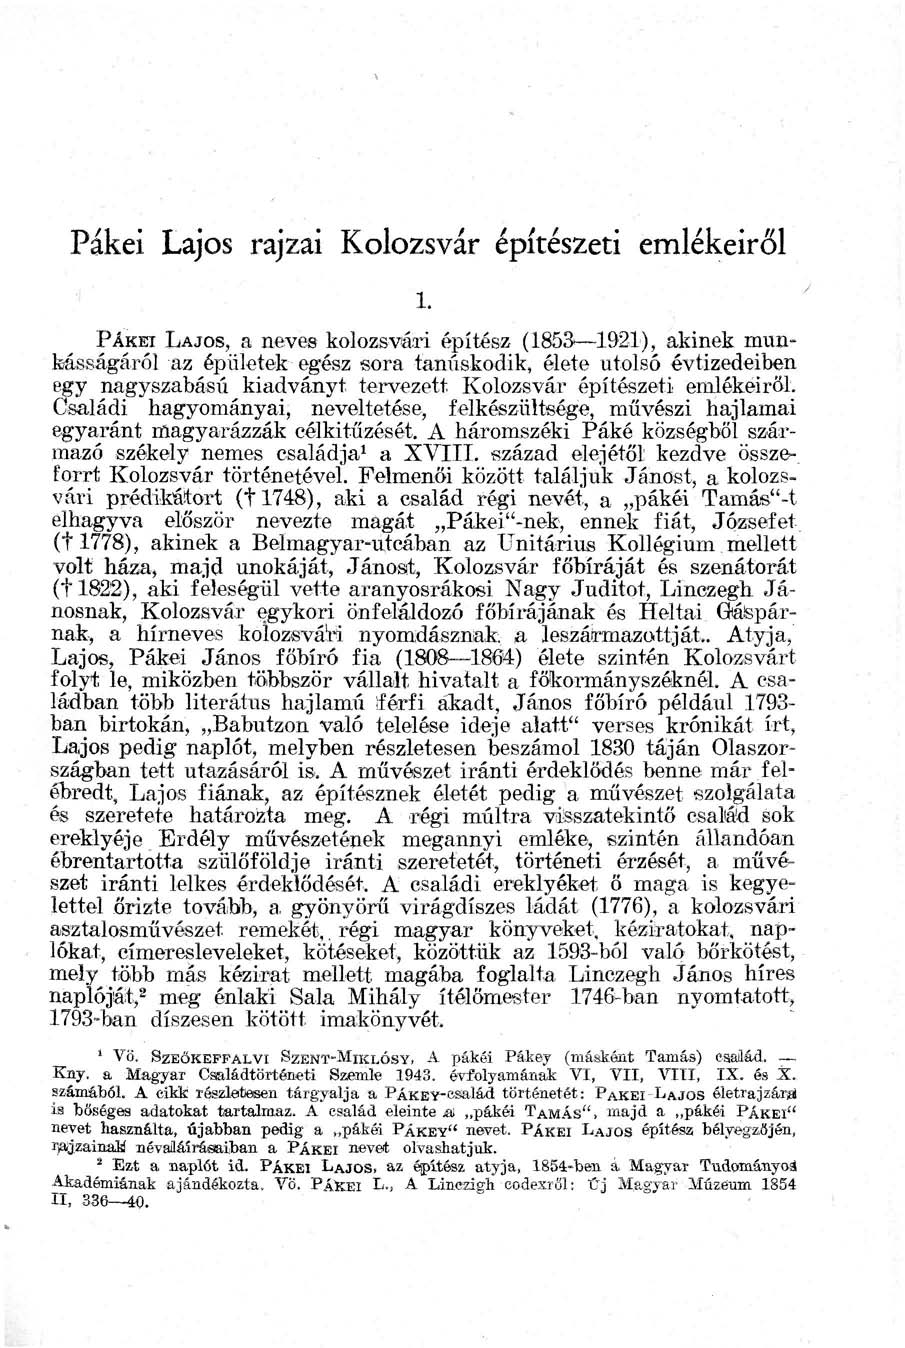 Pákei Lajos rajzai Kolozsvár építészeti emlékeiről PÁKH LAJOS, a neves kolozsvári építész (1853 1921), akinek munkásságáról az épületek egész sora tanúskodik, élete utolsó évtizedeiben egy